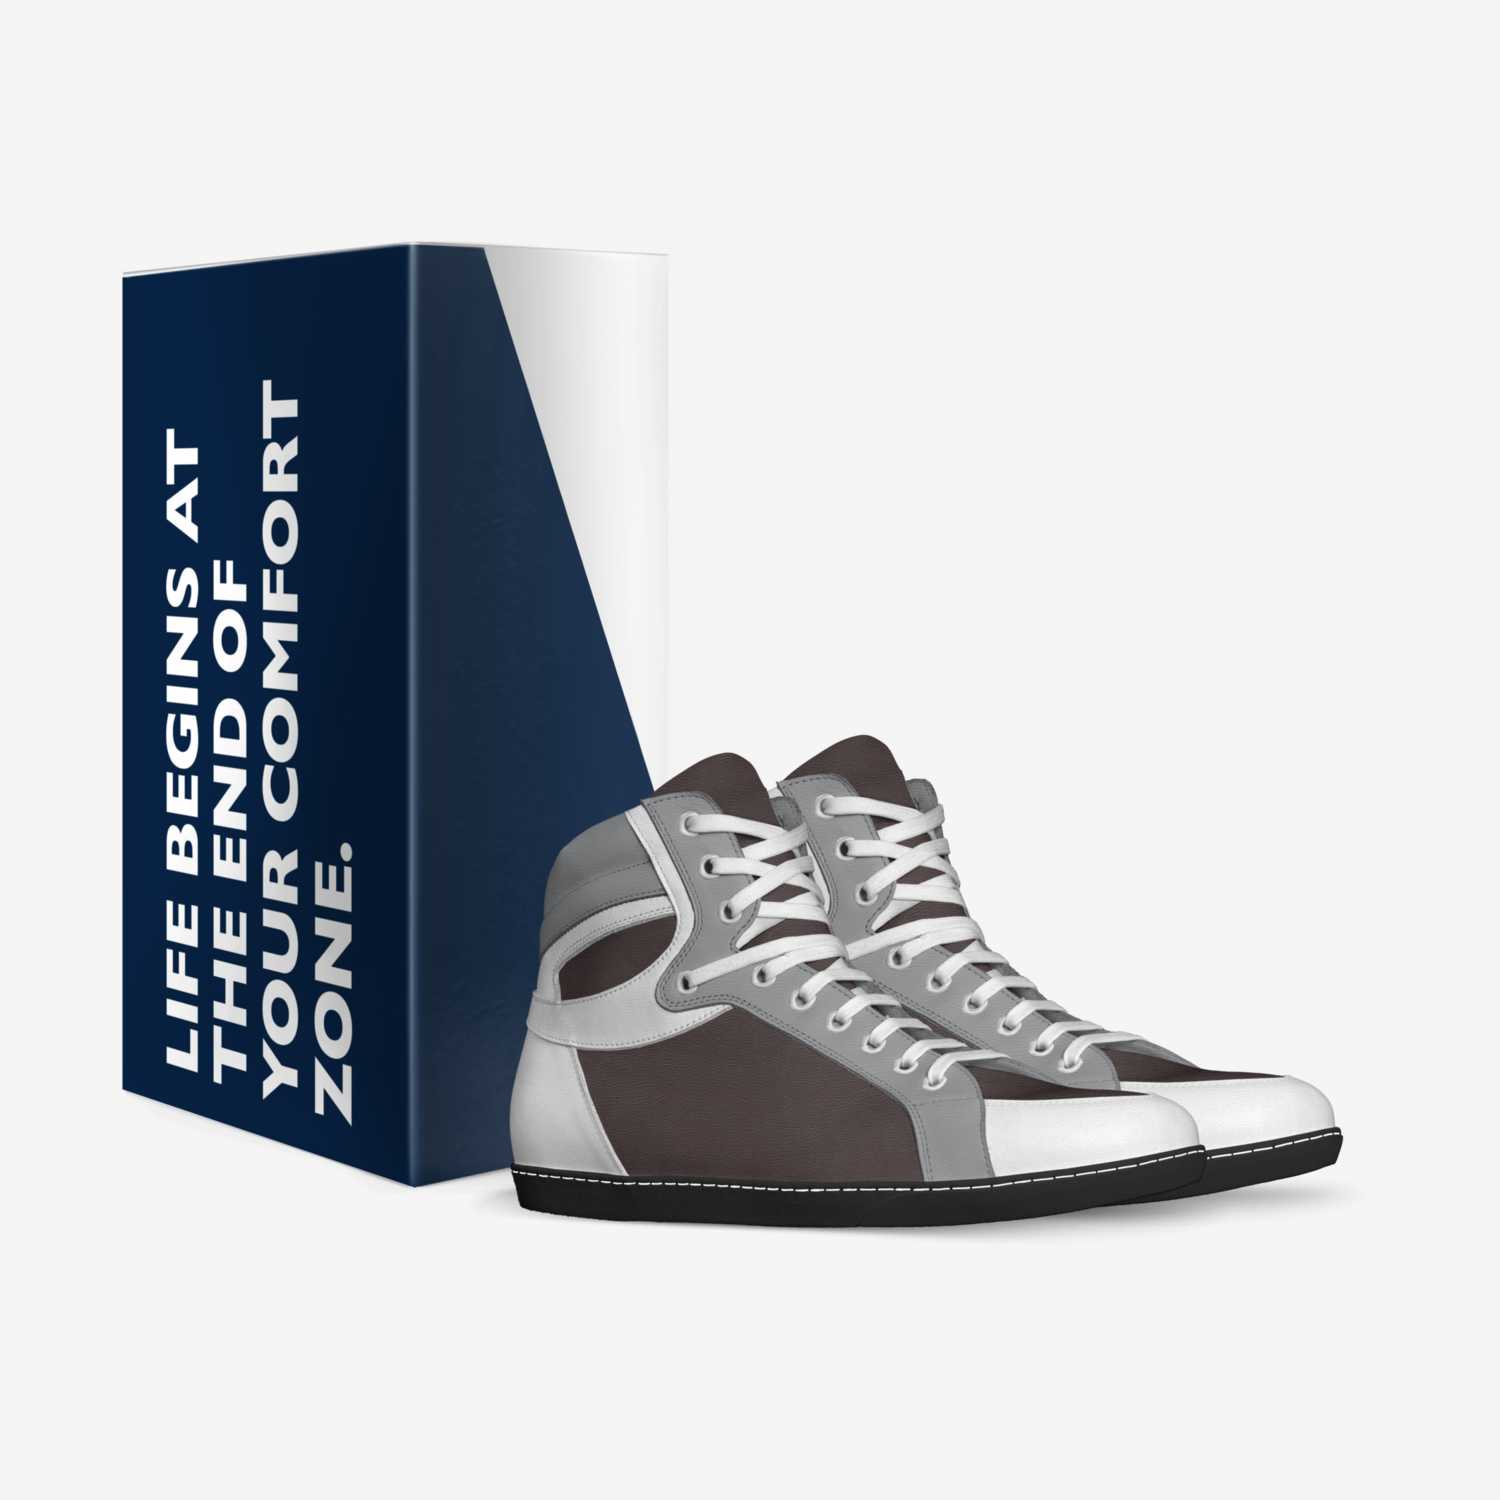 New Road ® custom made in Italy shoes by Paulina Jastrzebska | Box view